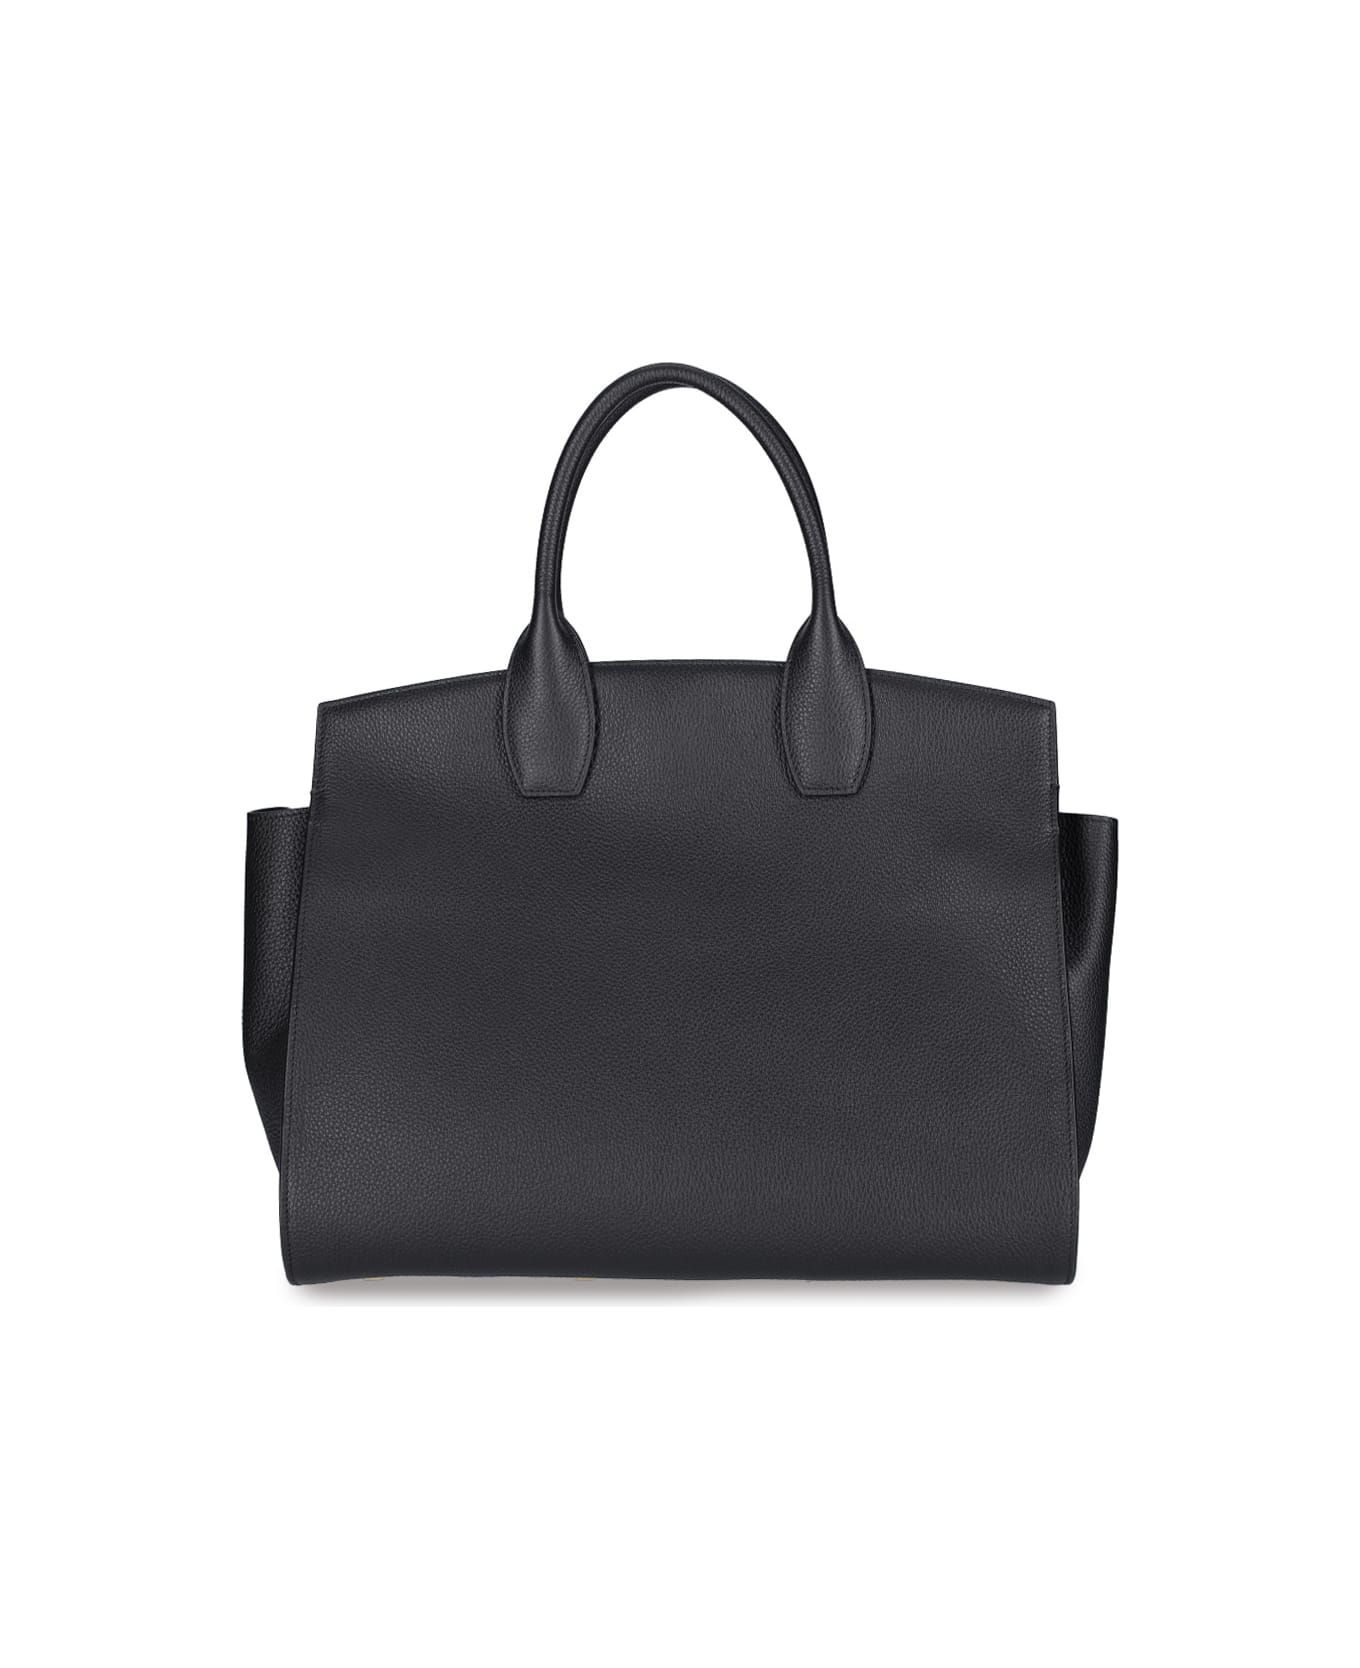 Ferragamo 'studio' Medium Hand Bag - Black  